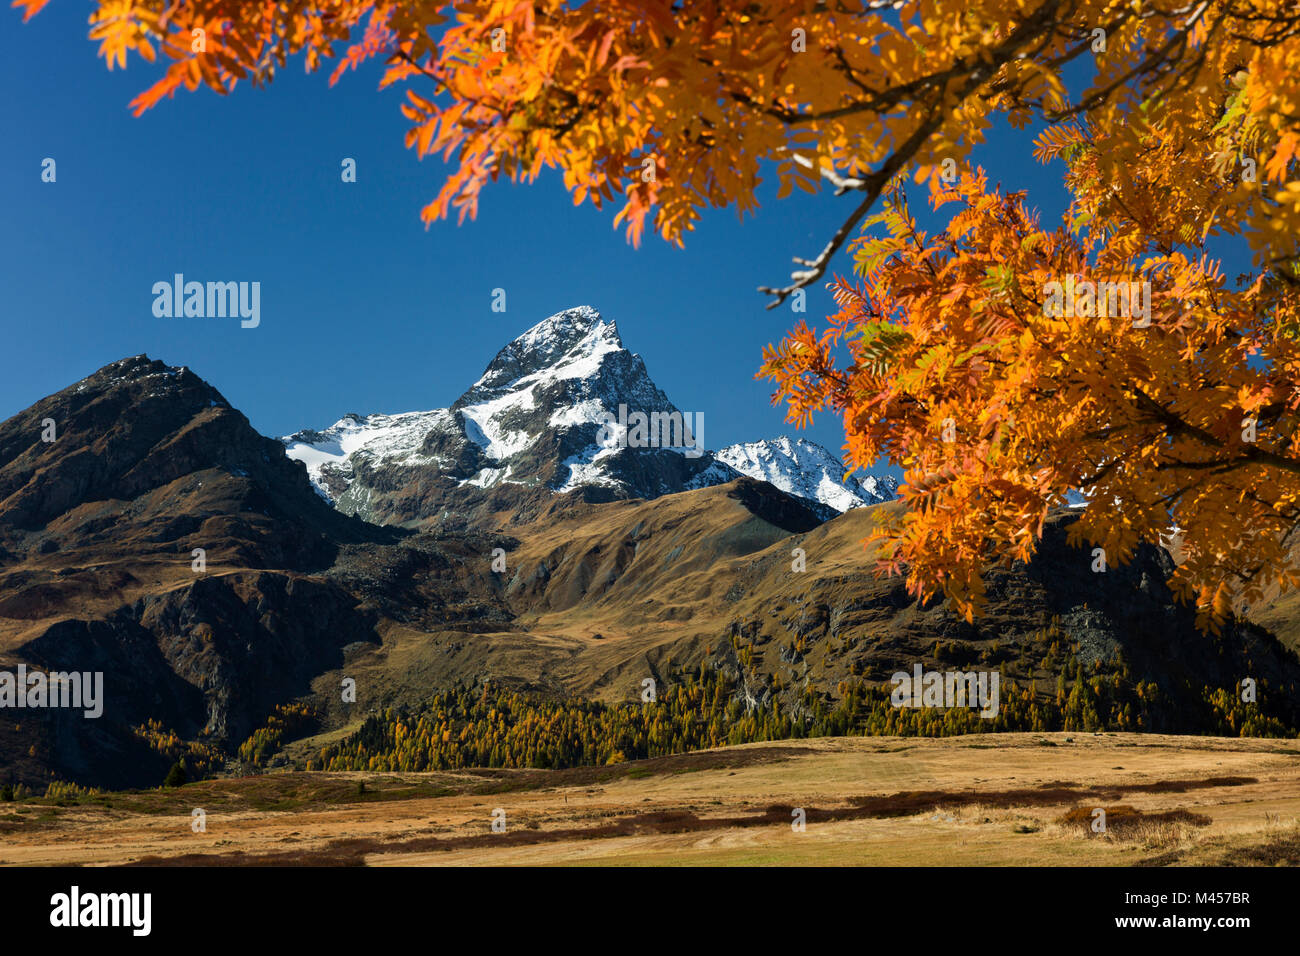 Piz Platta durch gelbe Blätter im Herbst in der Nähe der Alp Flix gerahmt, Kanton Graubünden, Schweiz Stockfoto